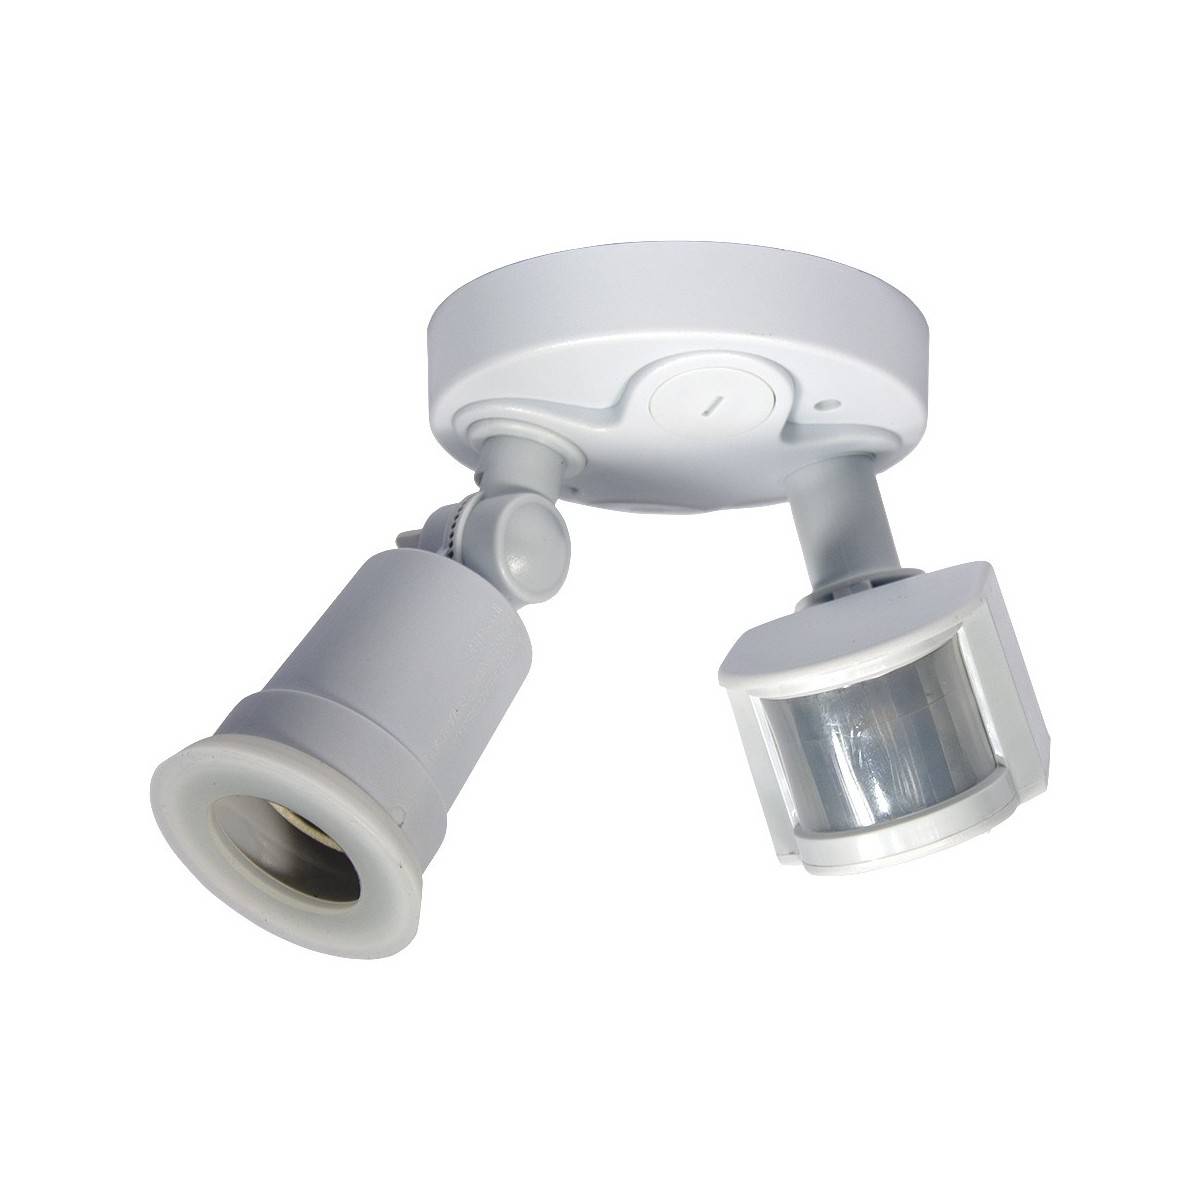 Lampholder for LED bulb E27 with motion sensor